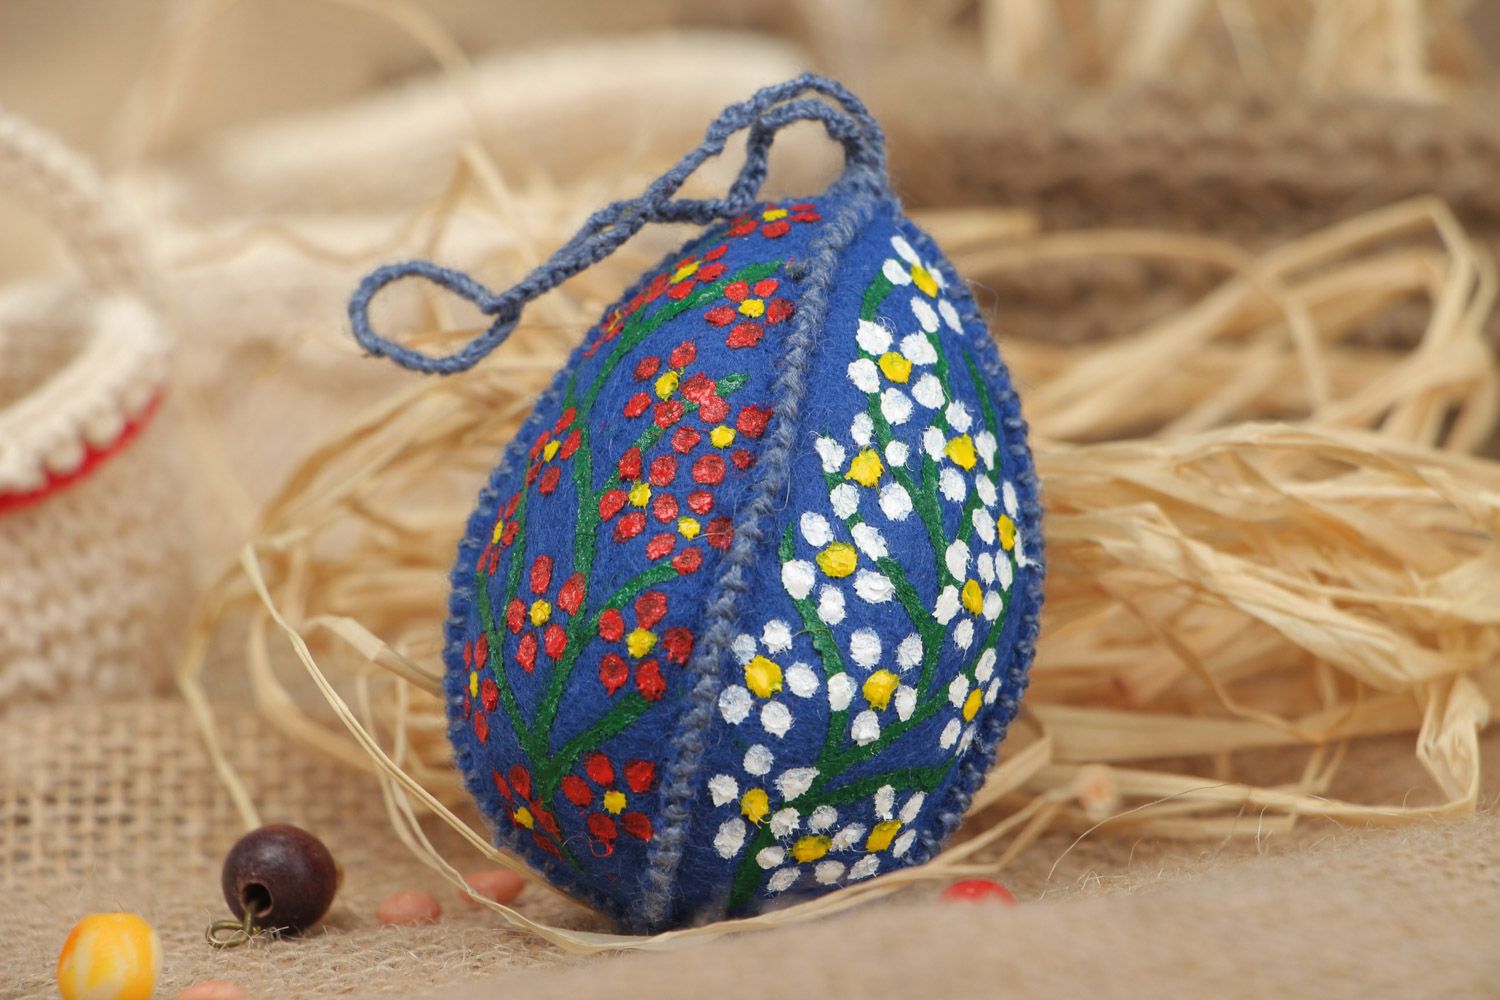 Интерьерная подвеска в виде пасхального яйца из ткани с росписью ручной работы фото 1